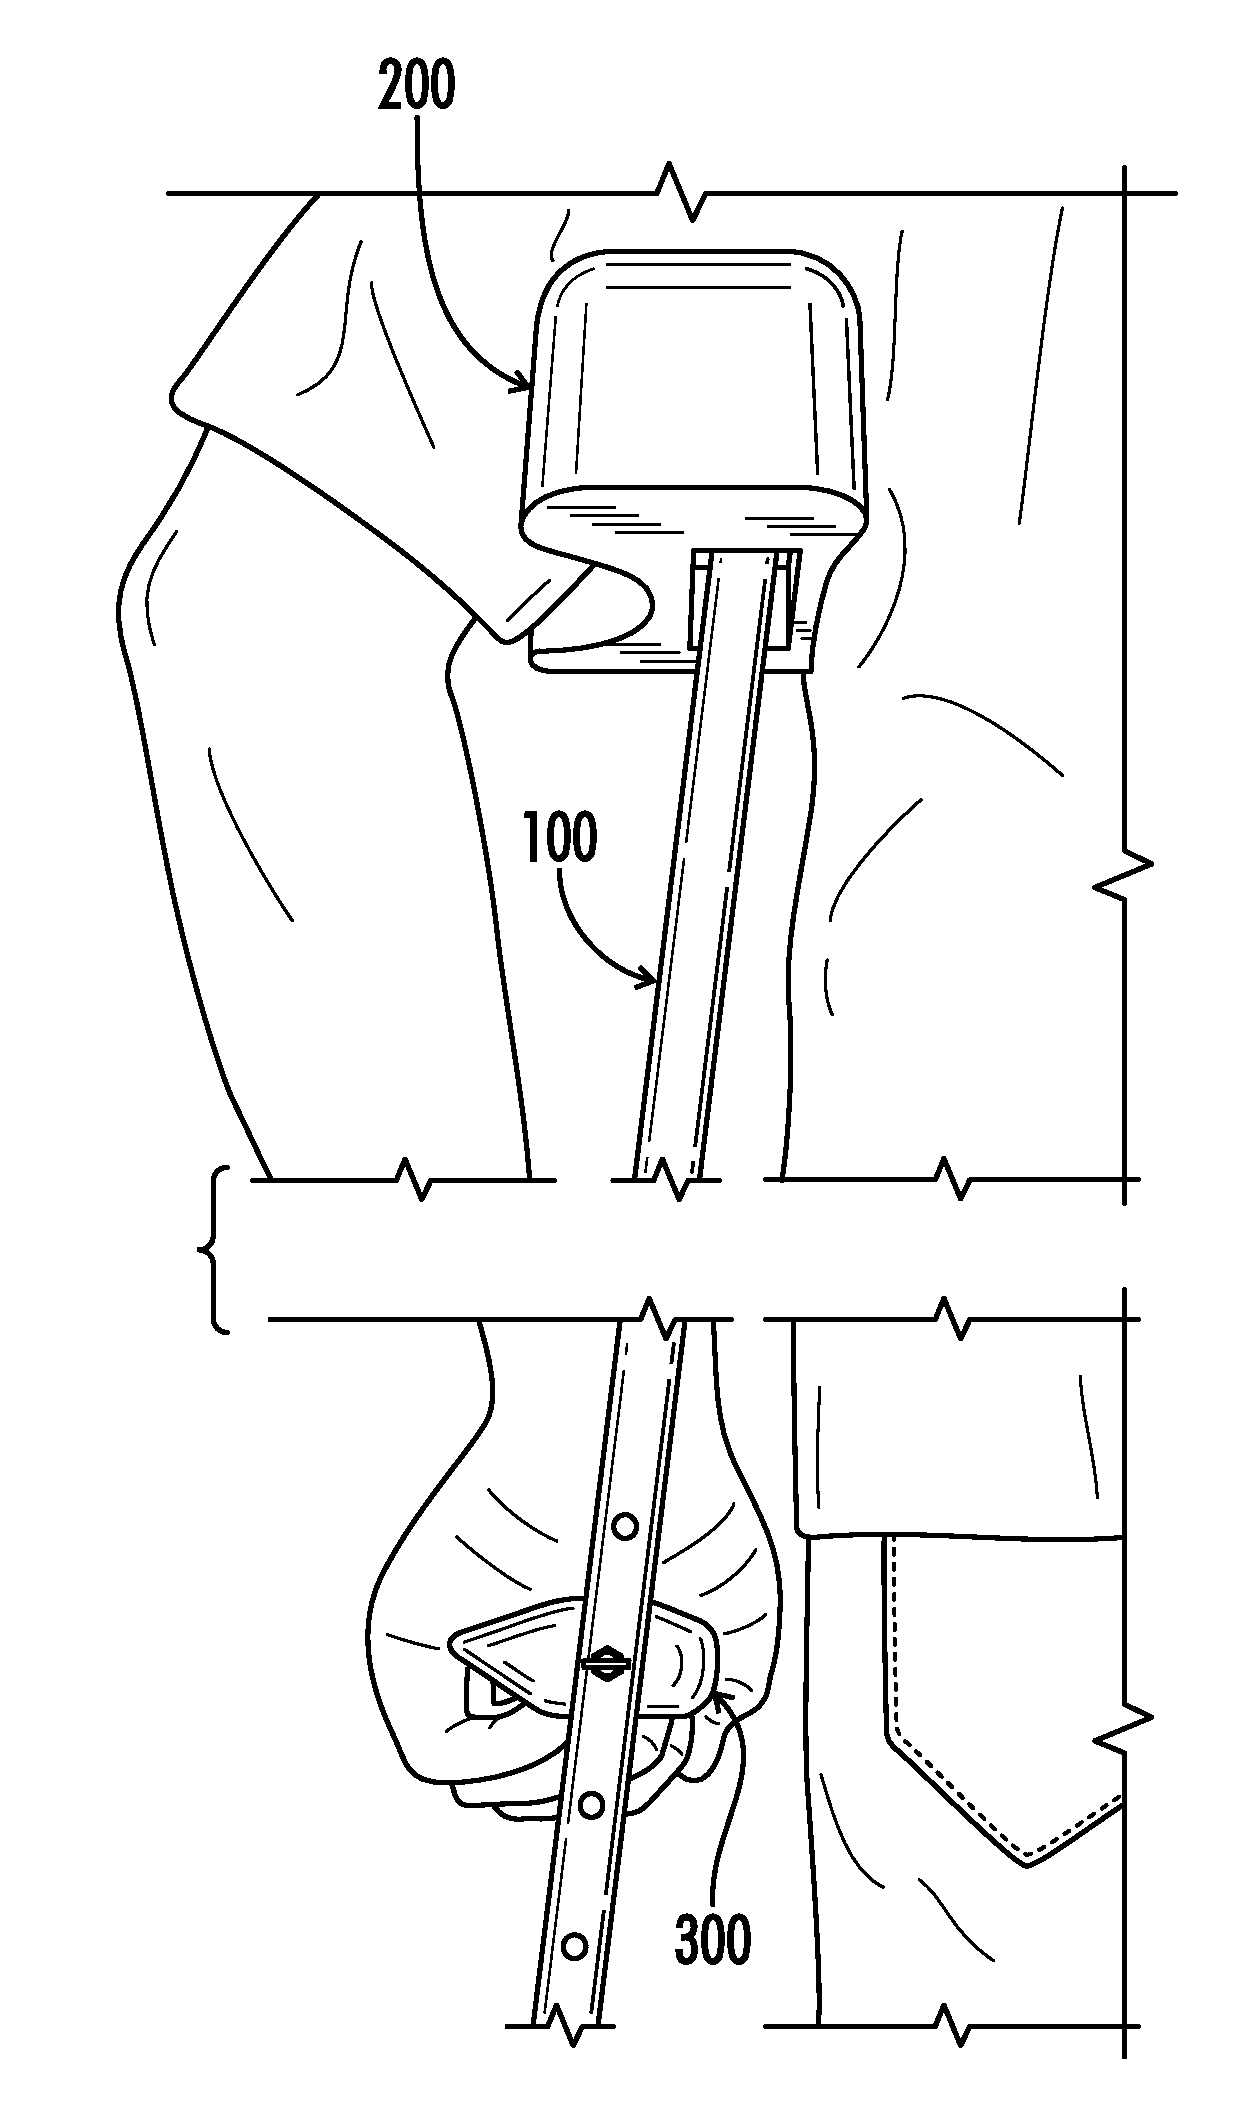 Ergonomic crutch grips